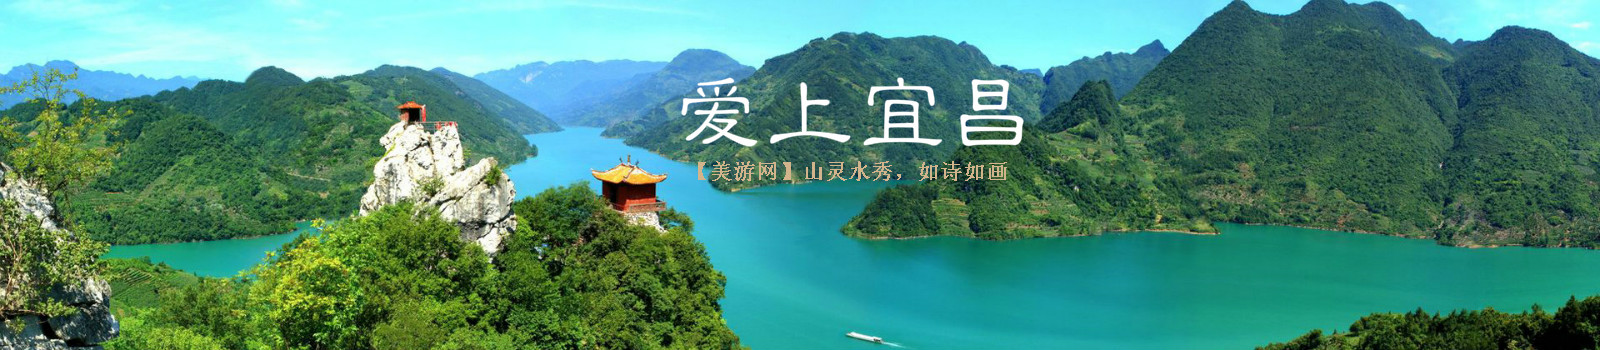 三峡游客中心网宜昌旅游线路 旅游景点预定